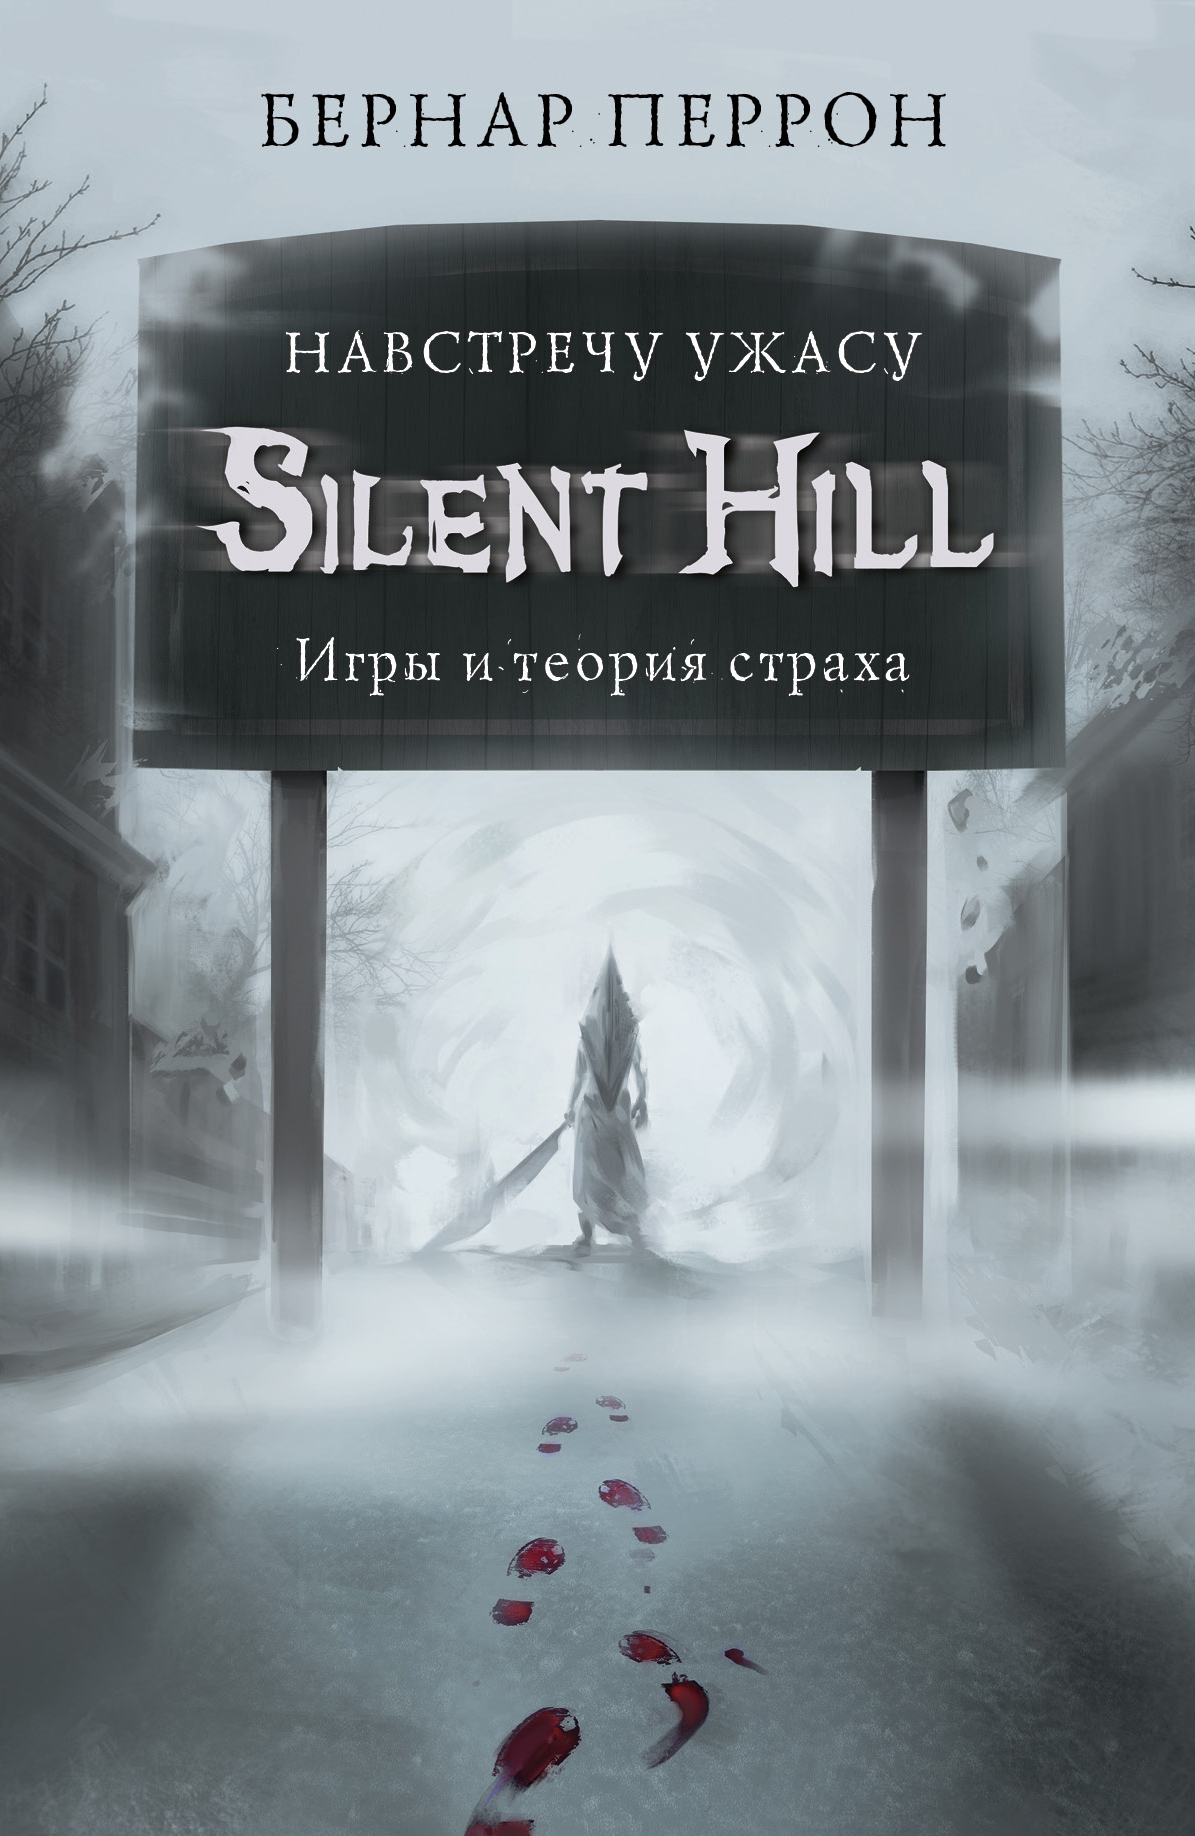 Silent Hill. Навстречу ужасу. Игры и теория страха (fb2)